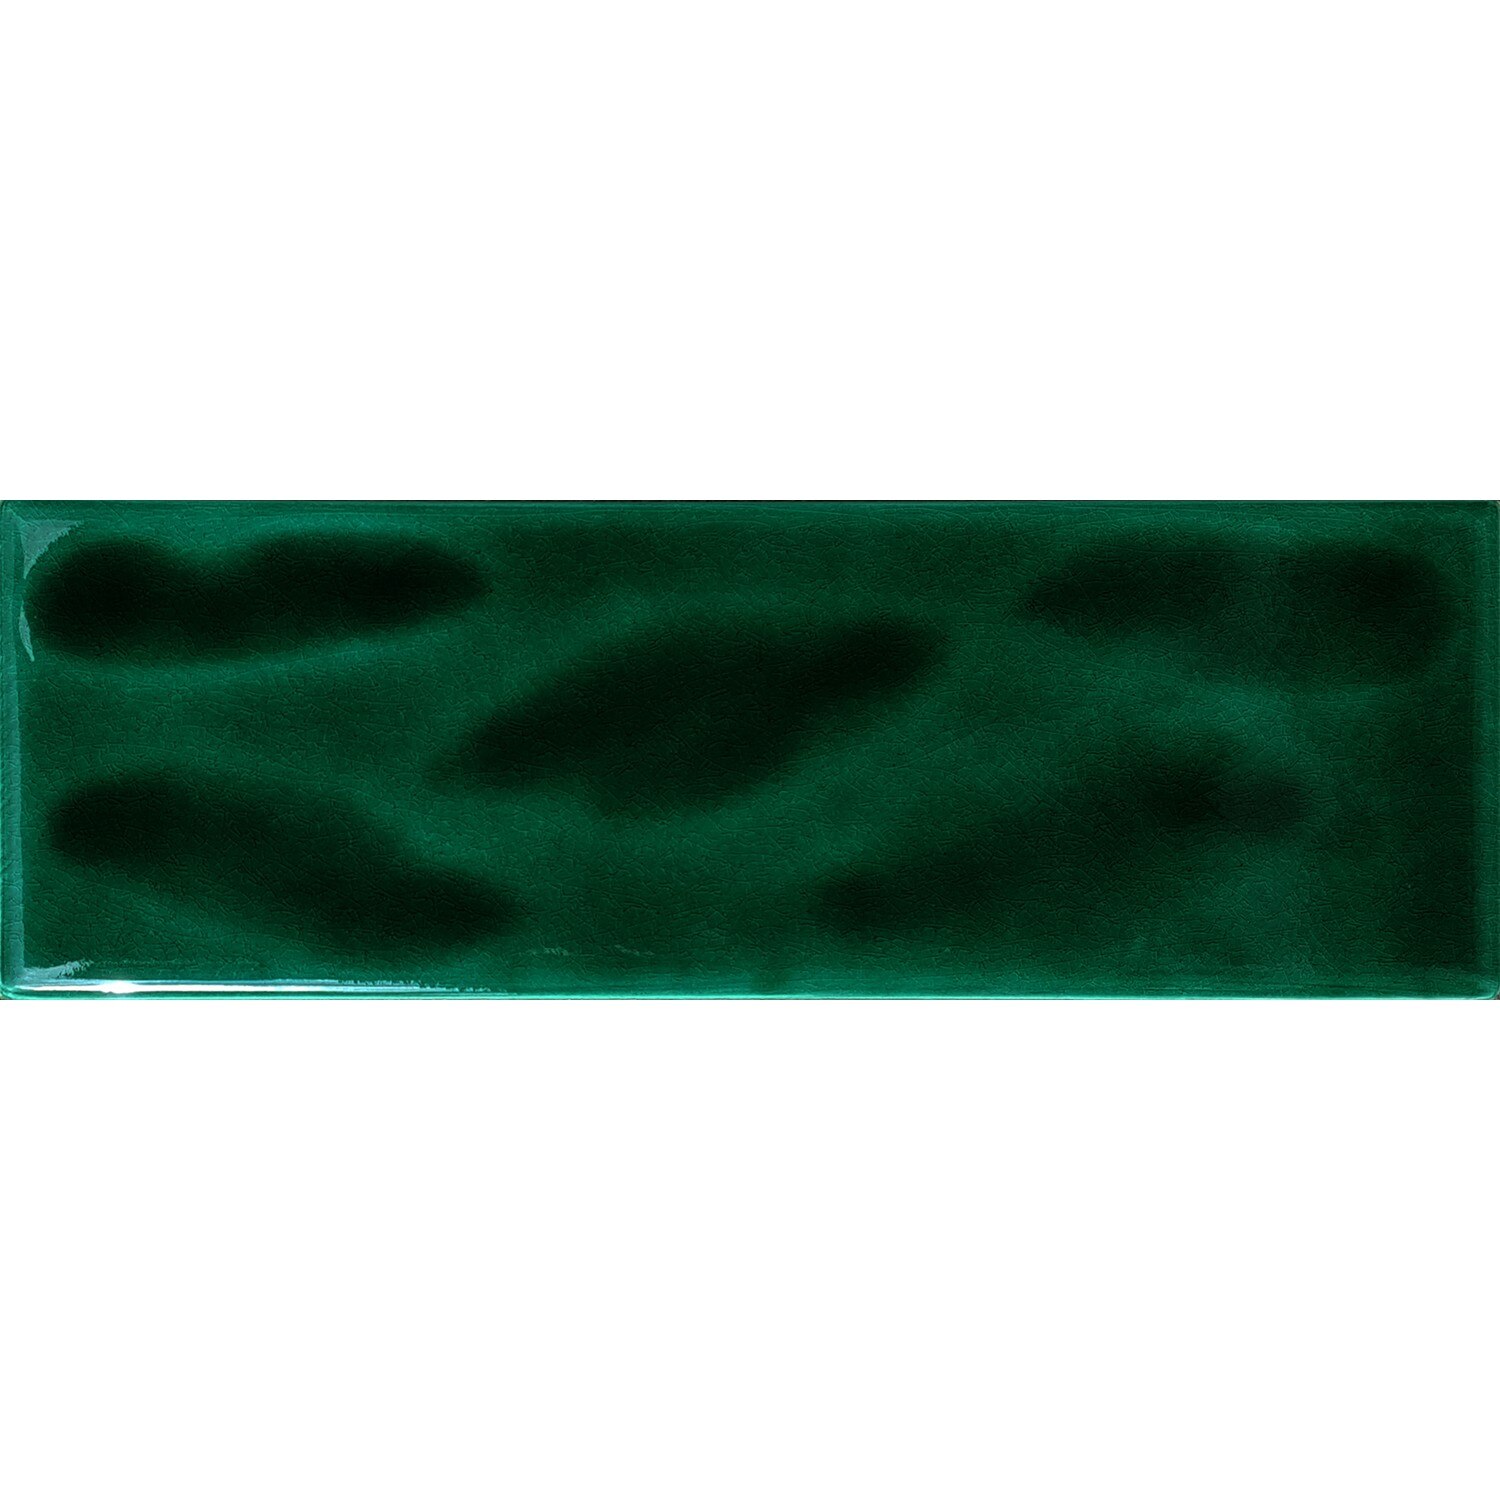 Armada flise 7 x 21 cm skraverede grønne mønstrede fliser keramiske fliser